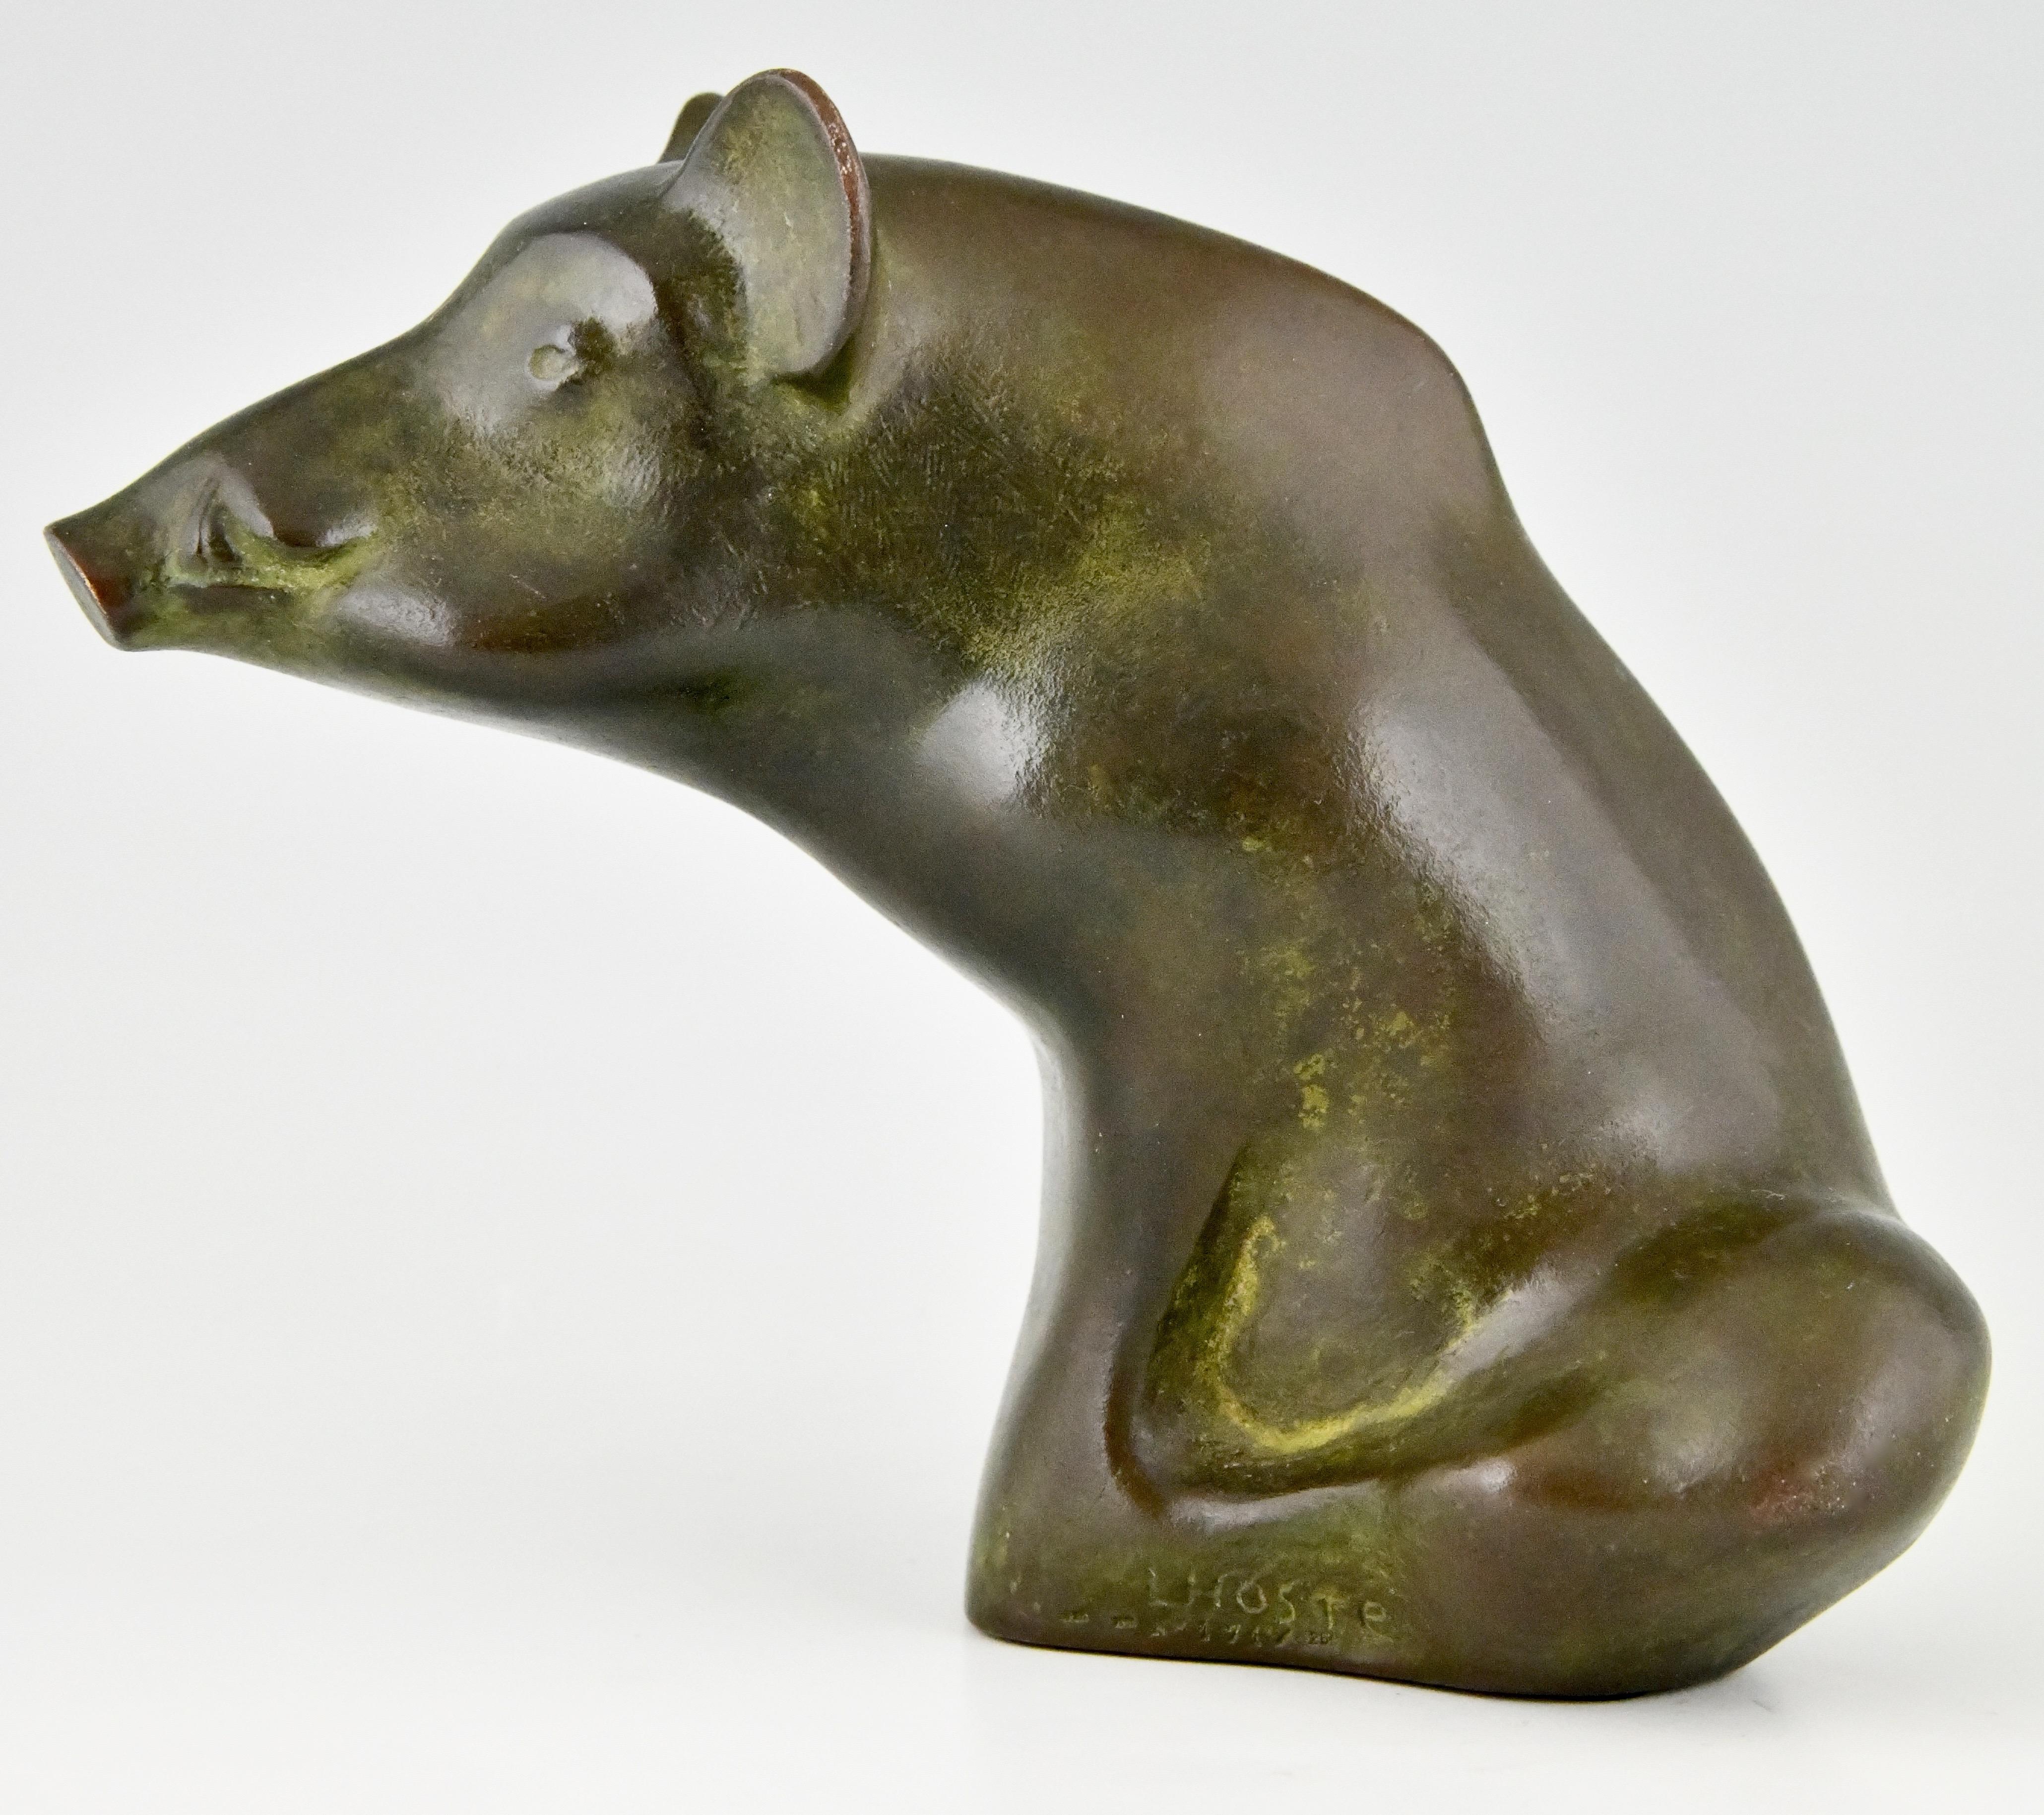 Stilvolle Bronzeskulptur eines sitzenden Wildschweins des französischen Künstlers Claude Lhoste (1929-2010) Schöne Patina.
Signiert, datiert 1993, nummeriert 171/250 und mit der Gießereimarke Monnaie de Paris.
Literatur:
